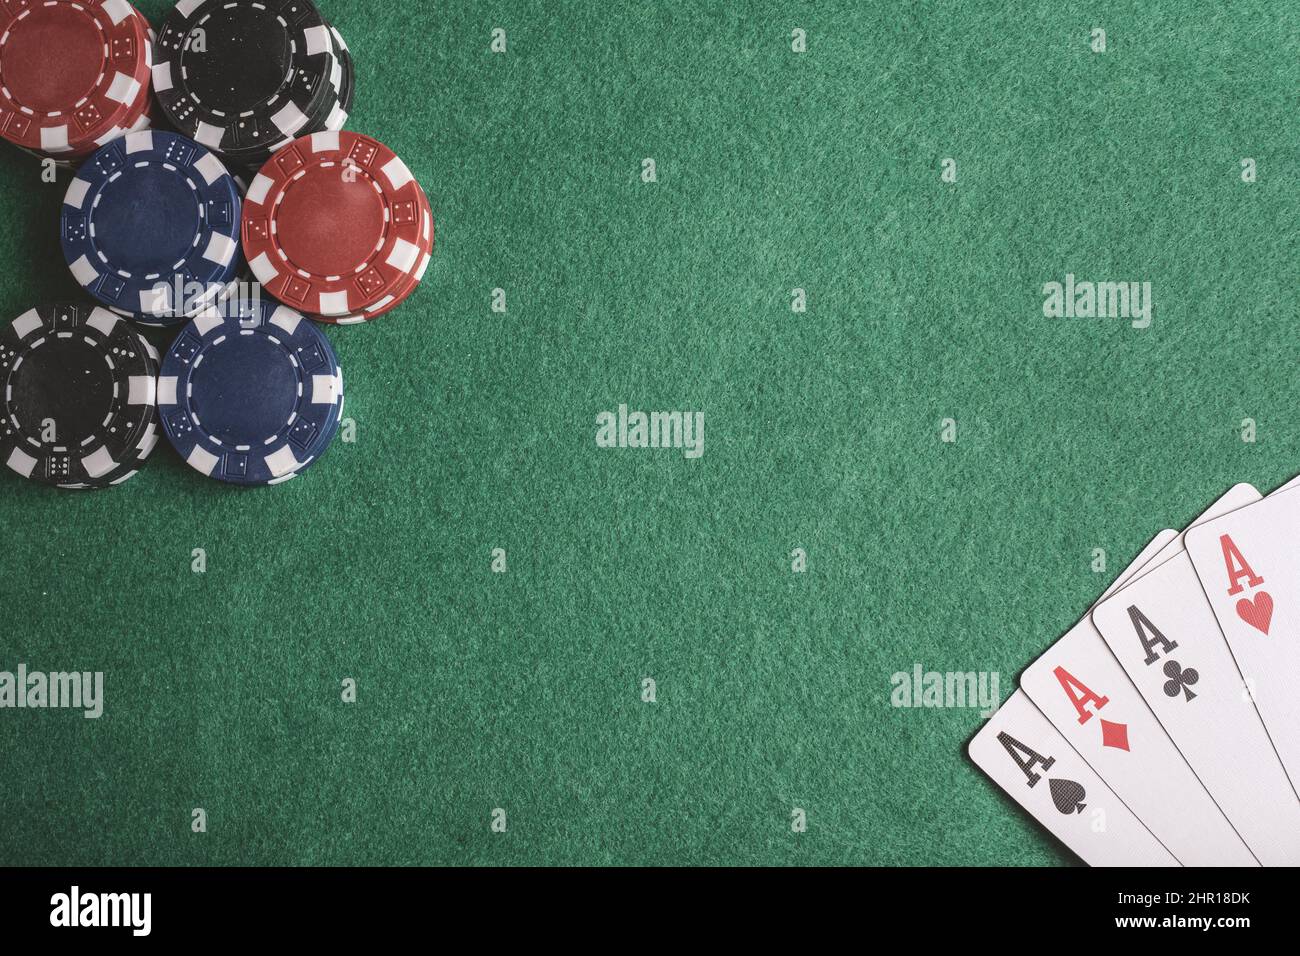 Pokerkarten, Chips, Würfel auf dem Spieltisch. Casino-Konzept Stockfoto